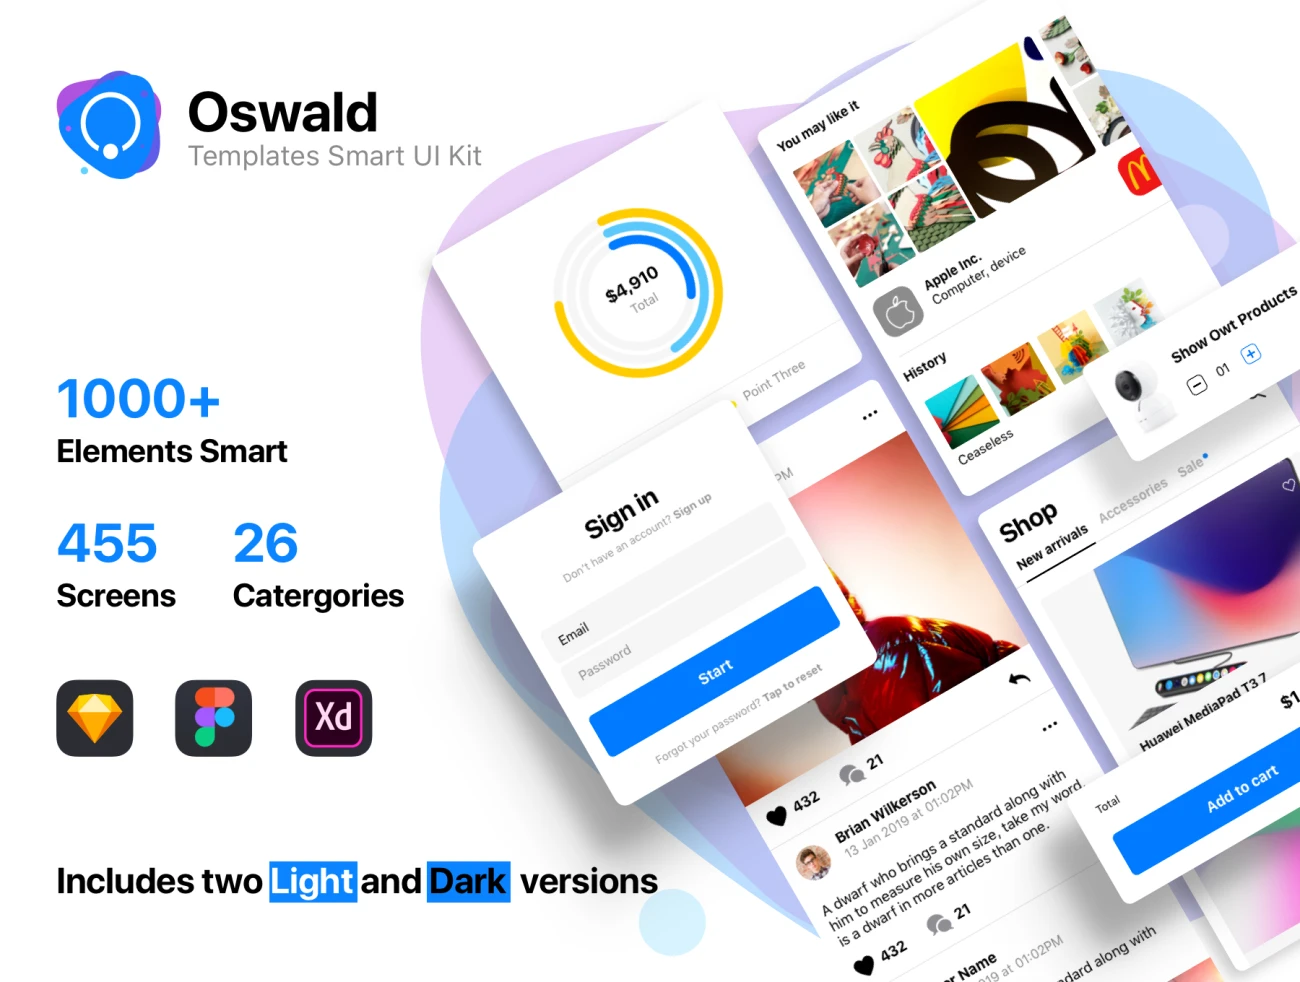 Oswald - Templates Smart UI Kit 智能模块明暗模式用户界面工具包-UI/UX、ui套件、列表、卡片式、图表、应用、支付、数据可视化-仪表板、网购、聊天、表单、预订-到位啦UI